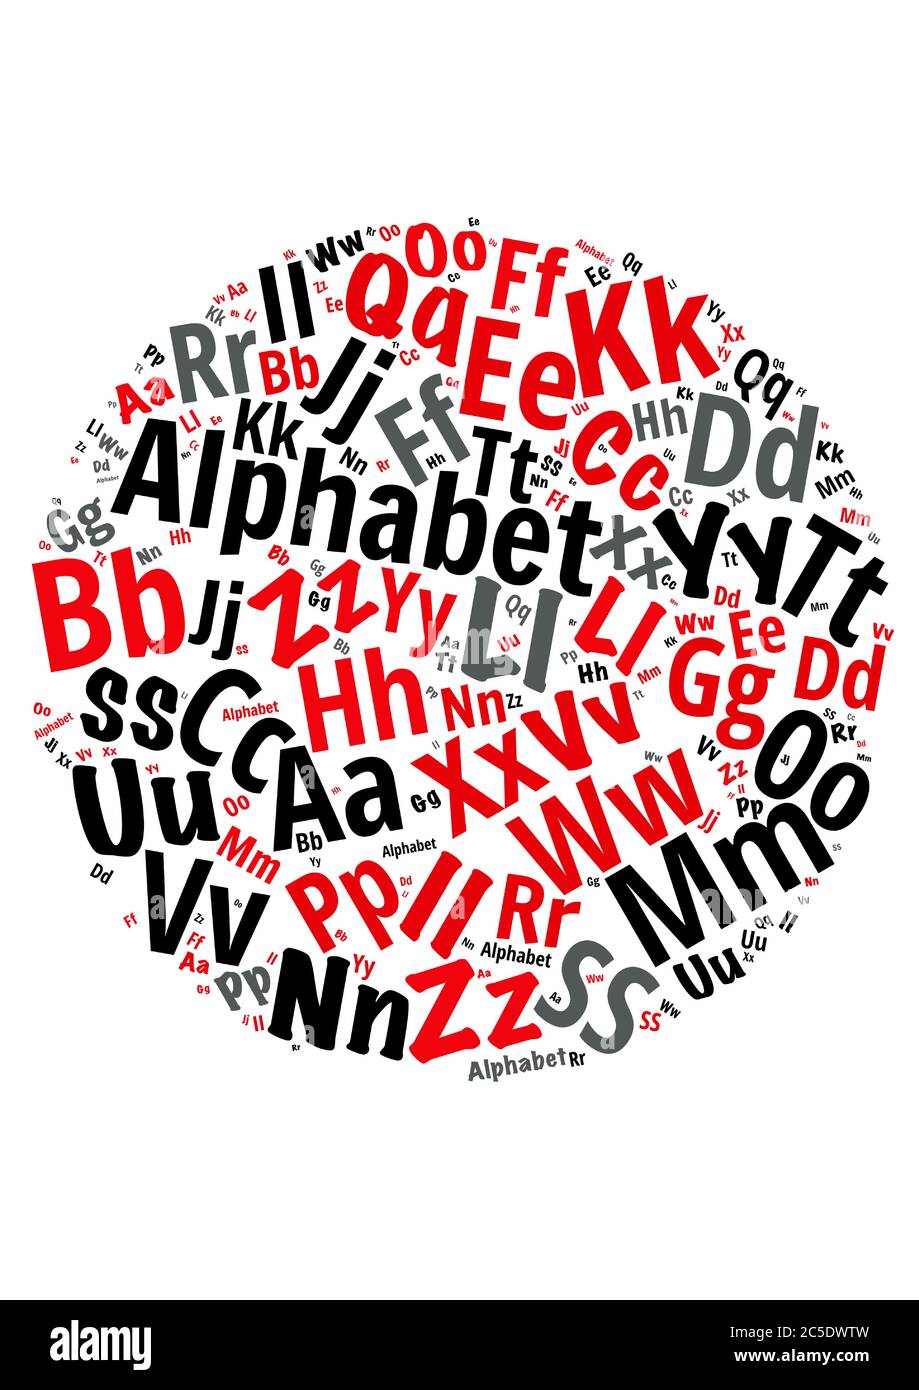 Illustration d'un nuage de mots avec des mots représentant les lettres de l'alphabet Illustration de Vecteur